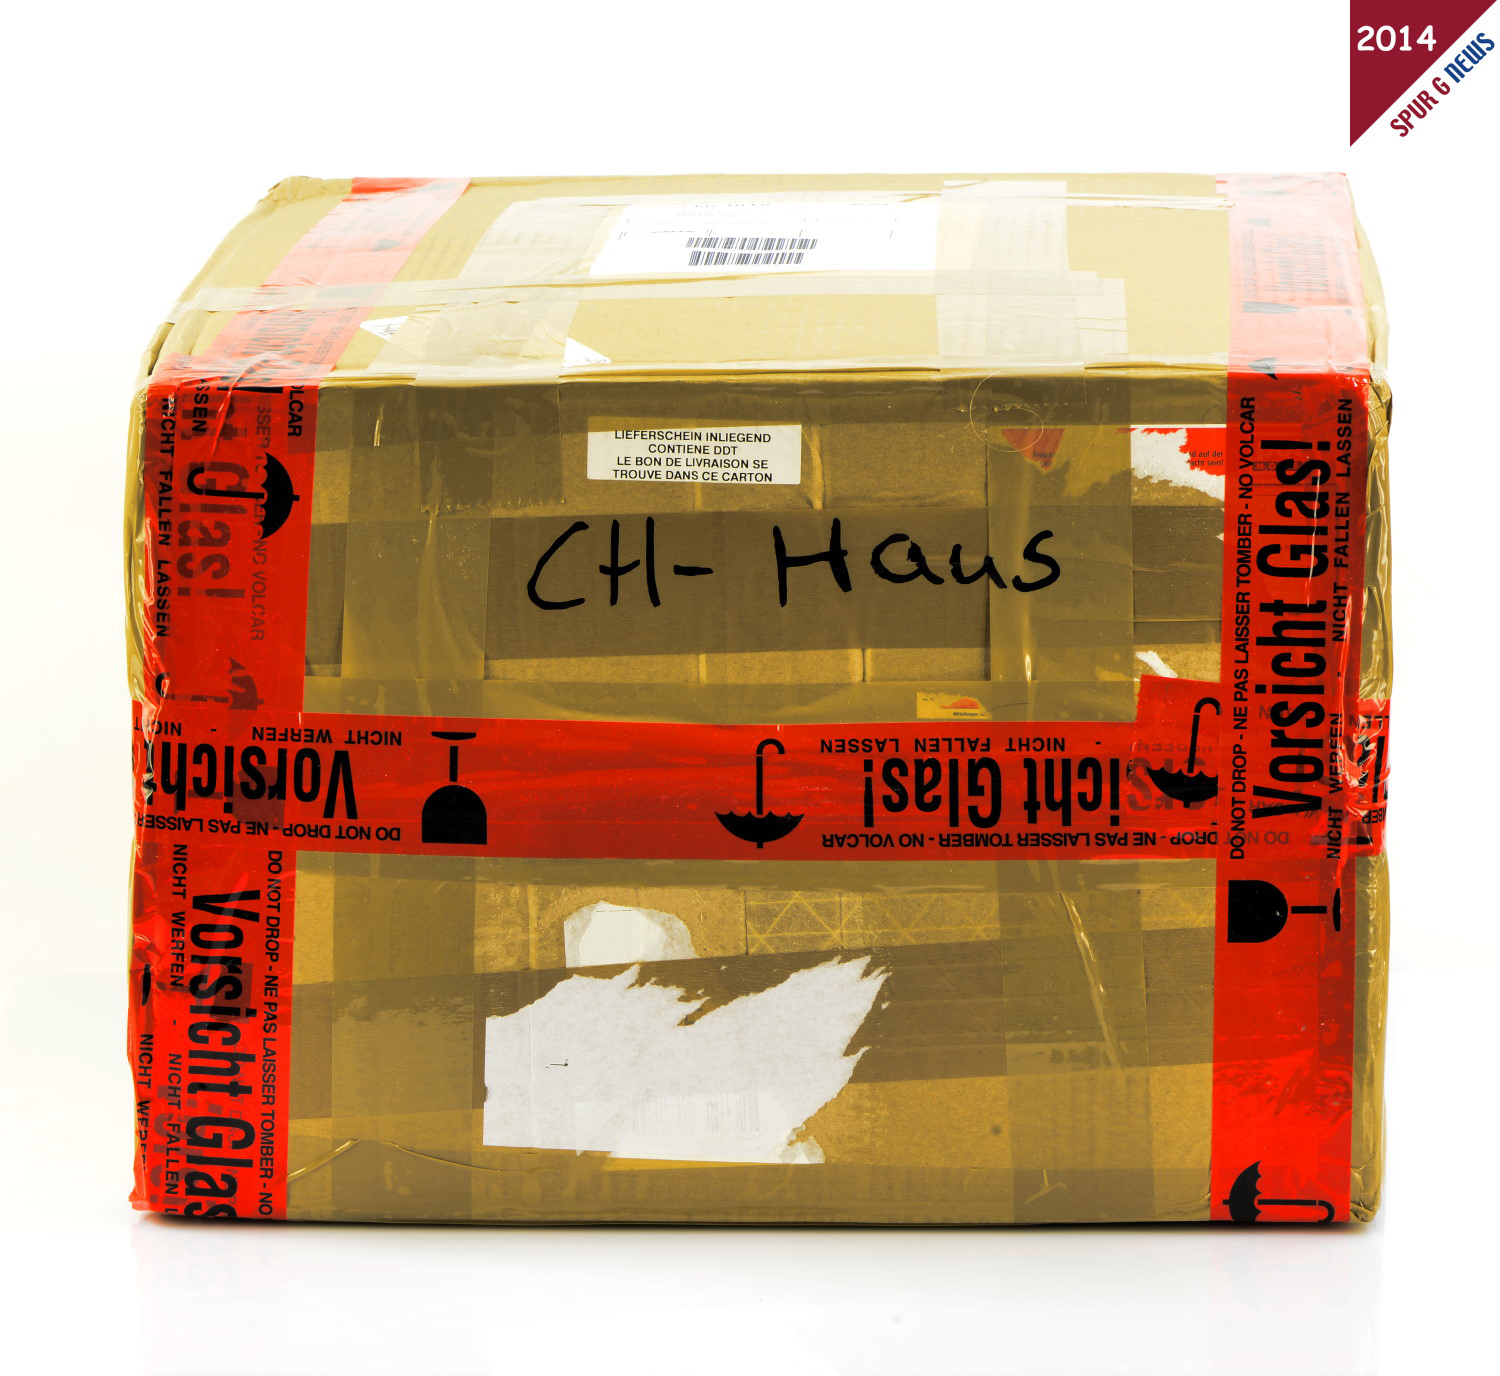 CH-Schweiz Haus von easygleis. Unversehrt angekommen dank guter Verpackung und zrtlichem Paketdienst. 